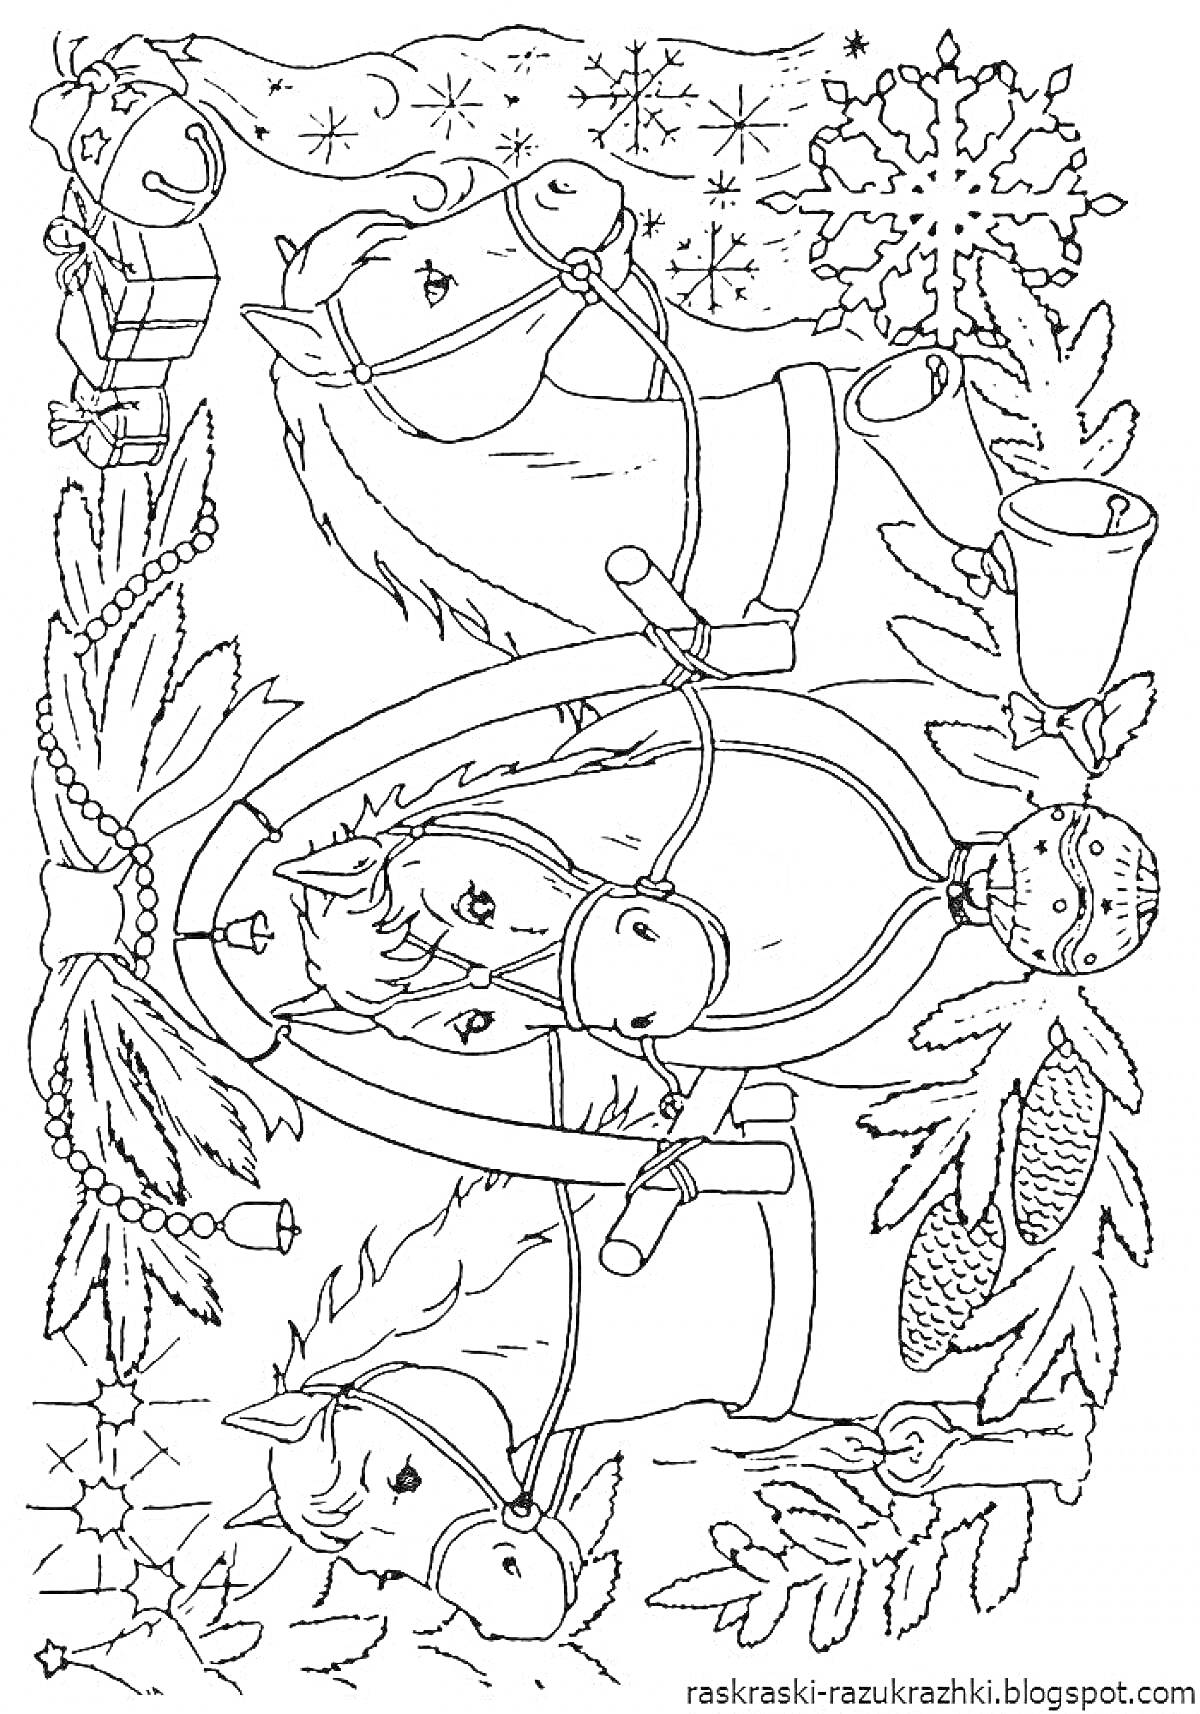 Раскраска Лошади-качели с новогодними украшениями, в окружении снежинок, колокольчиков и ёлочных веток